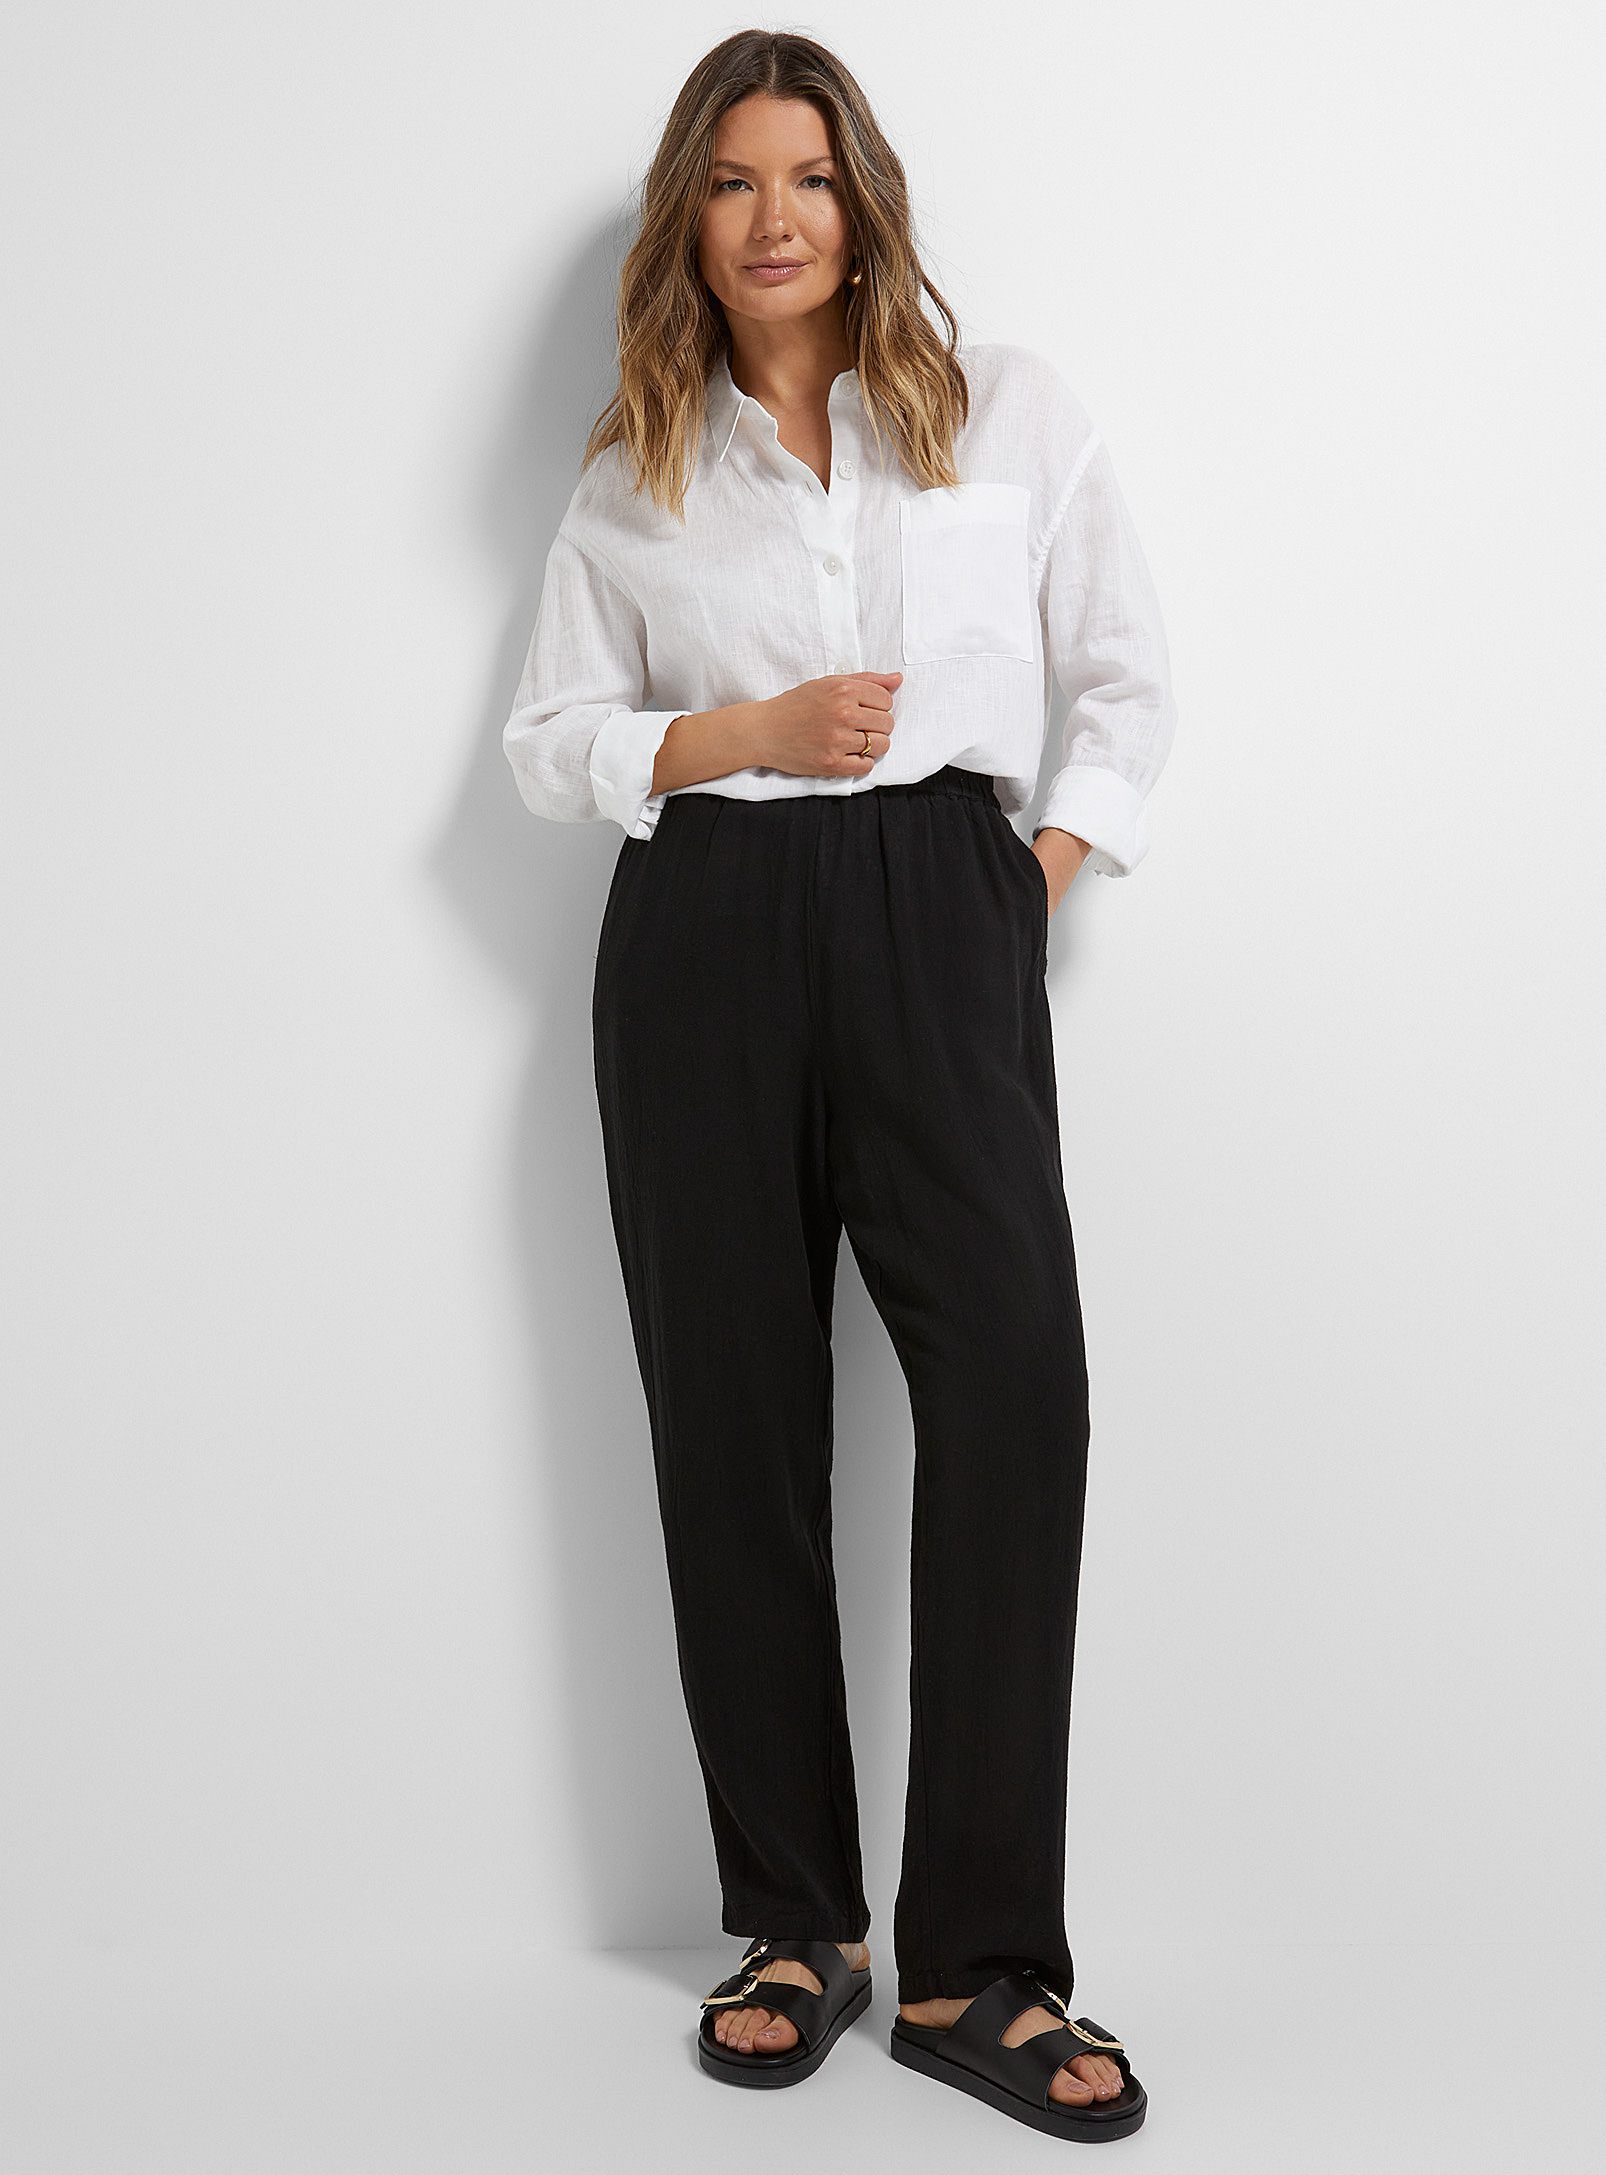 Soaked Luxury - Le pantalon lin noir taille élastique Vinda